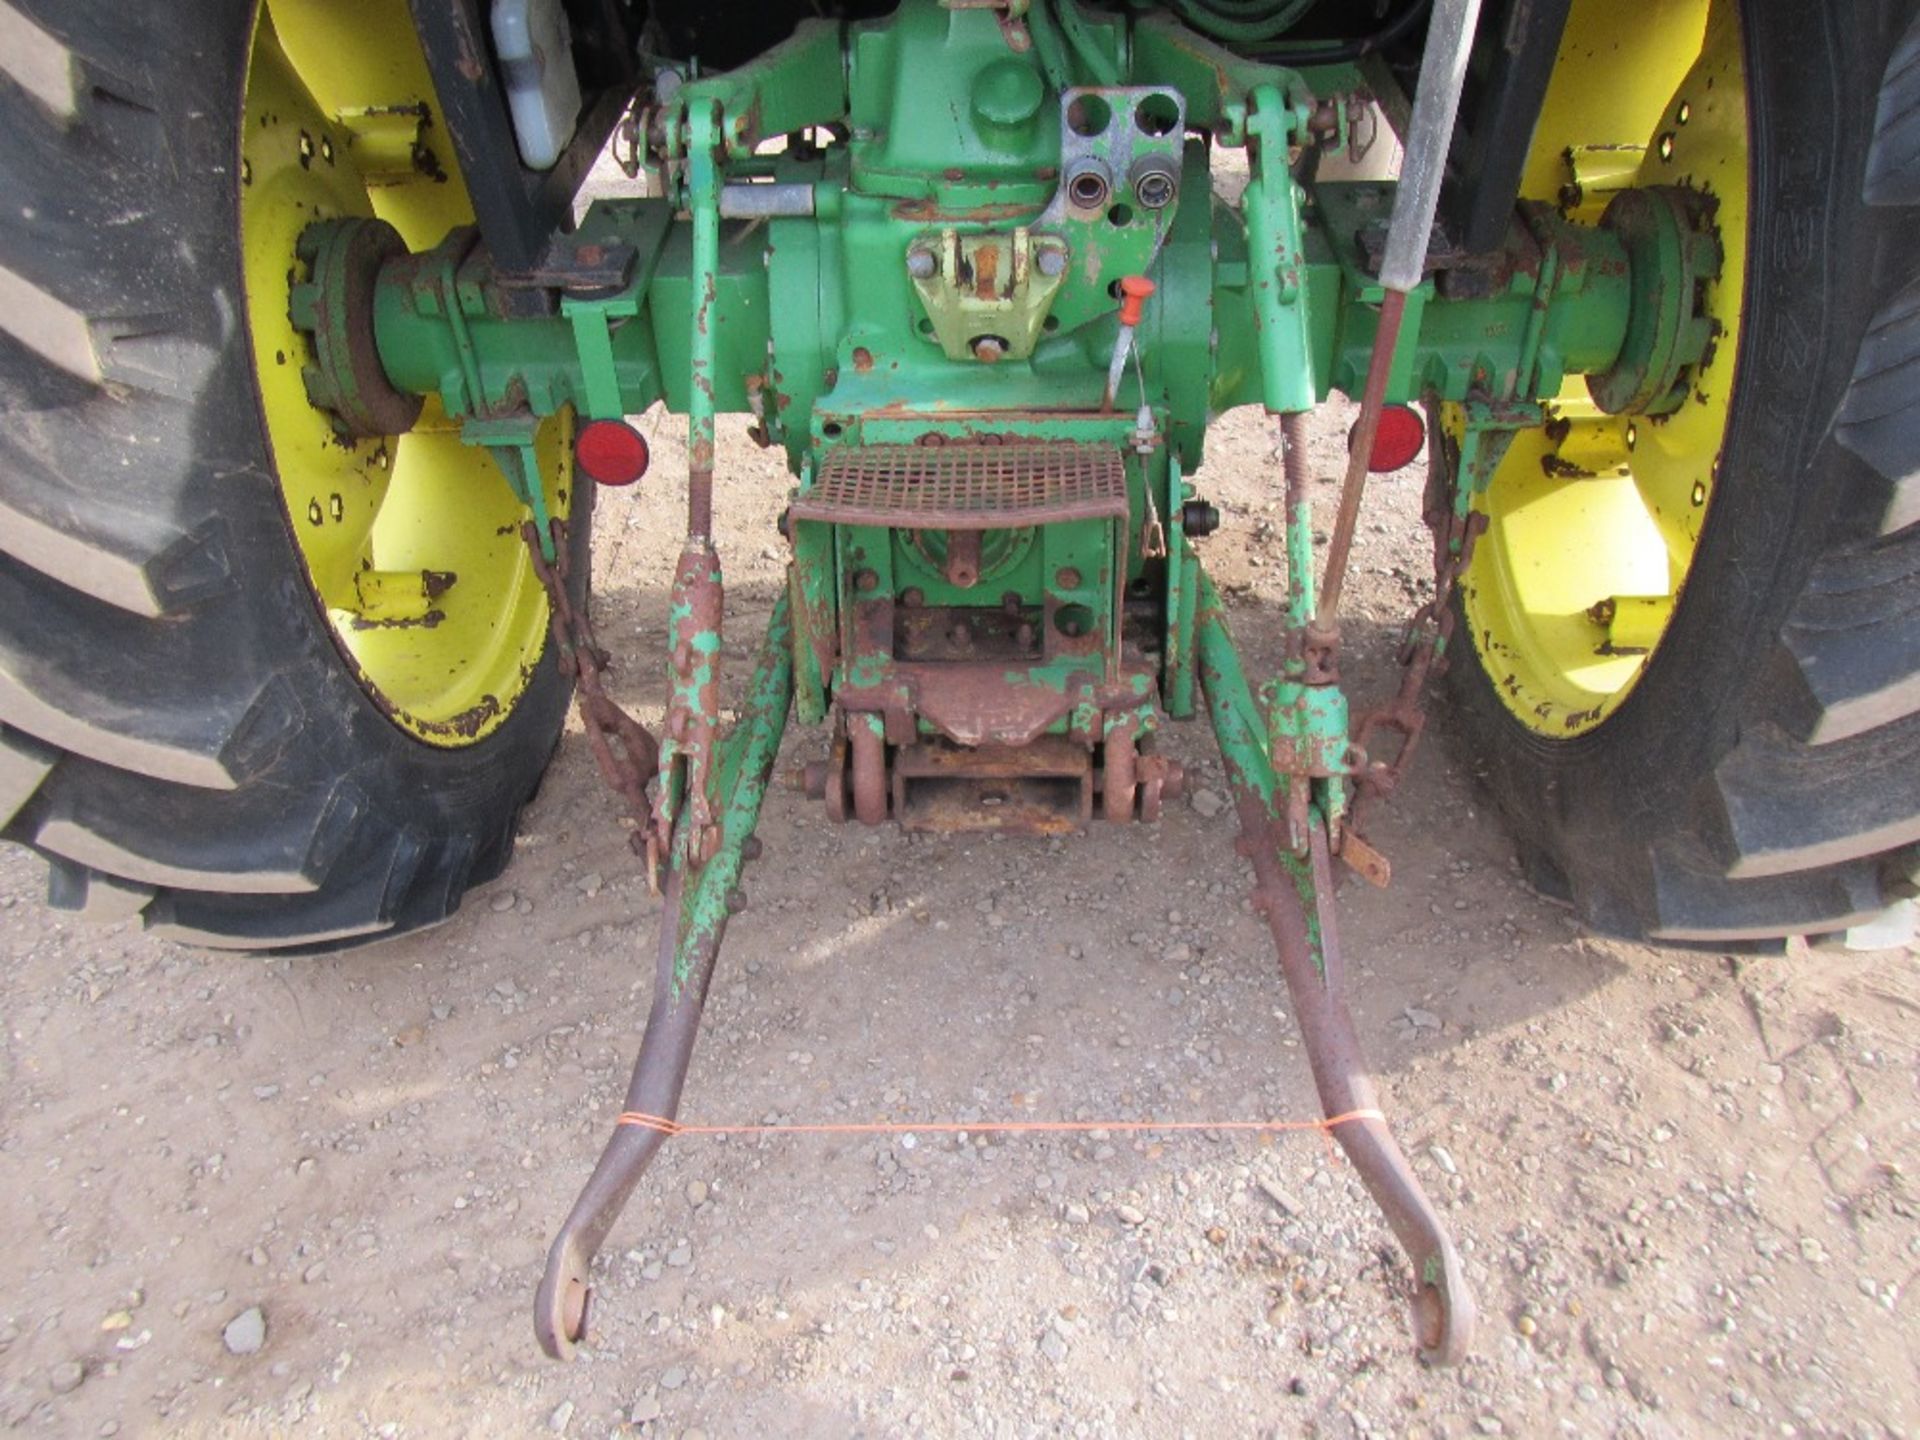 1989 John Deere 1950 2wd Tractor. Reg. No. A122 VFE Ser. No. 495017 - Image 8 of 18